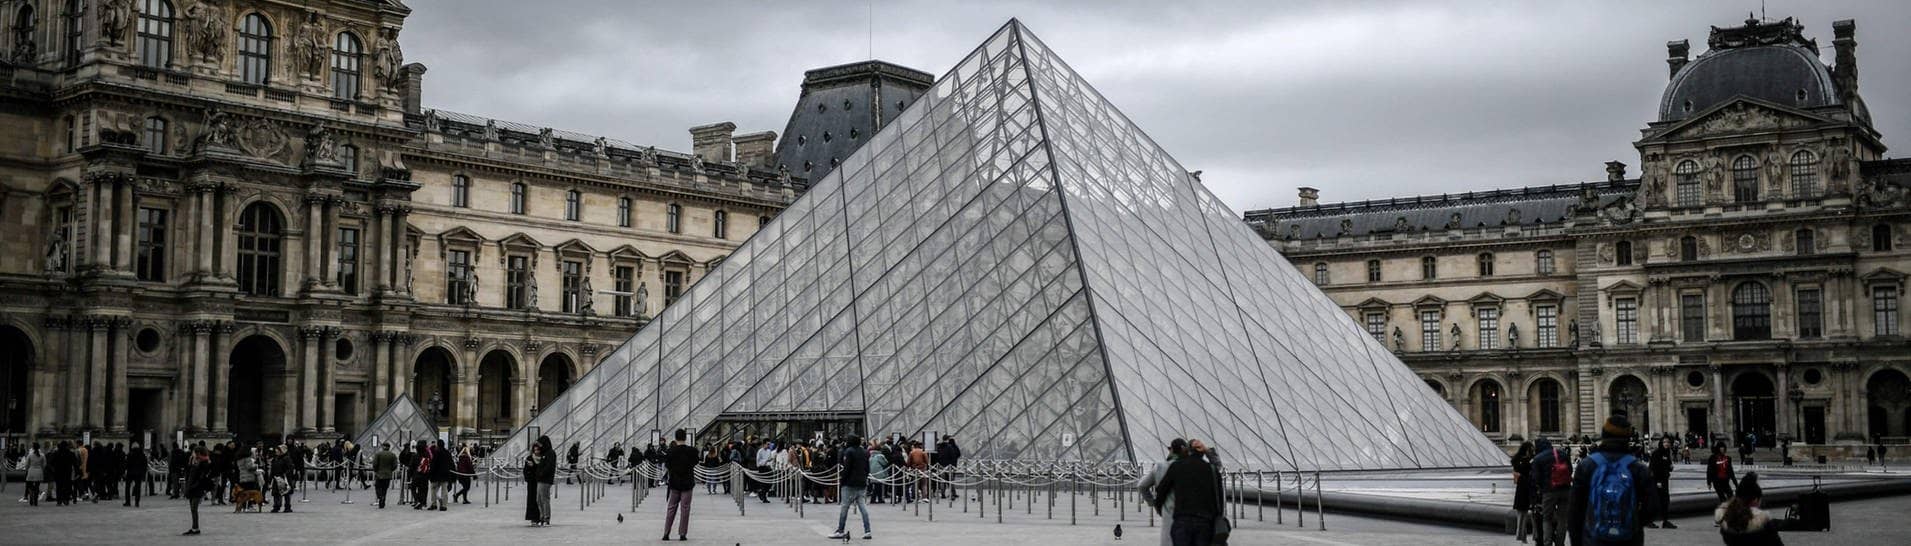 Touristen besuchen die Glaspyramide im Innenhof des Louvre. - Das Museum wurde wegen einer Bombendrohung gesperrt. (Foto: dpa Bildfunk, picture alliance/dpa/AFP | Stephane De Sakutin)